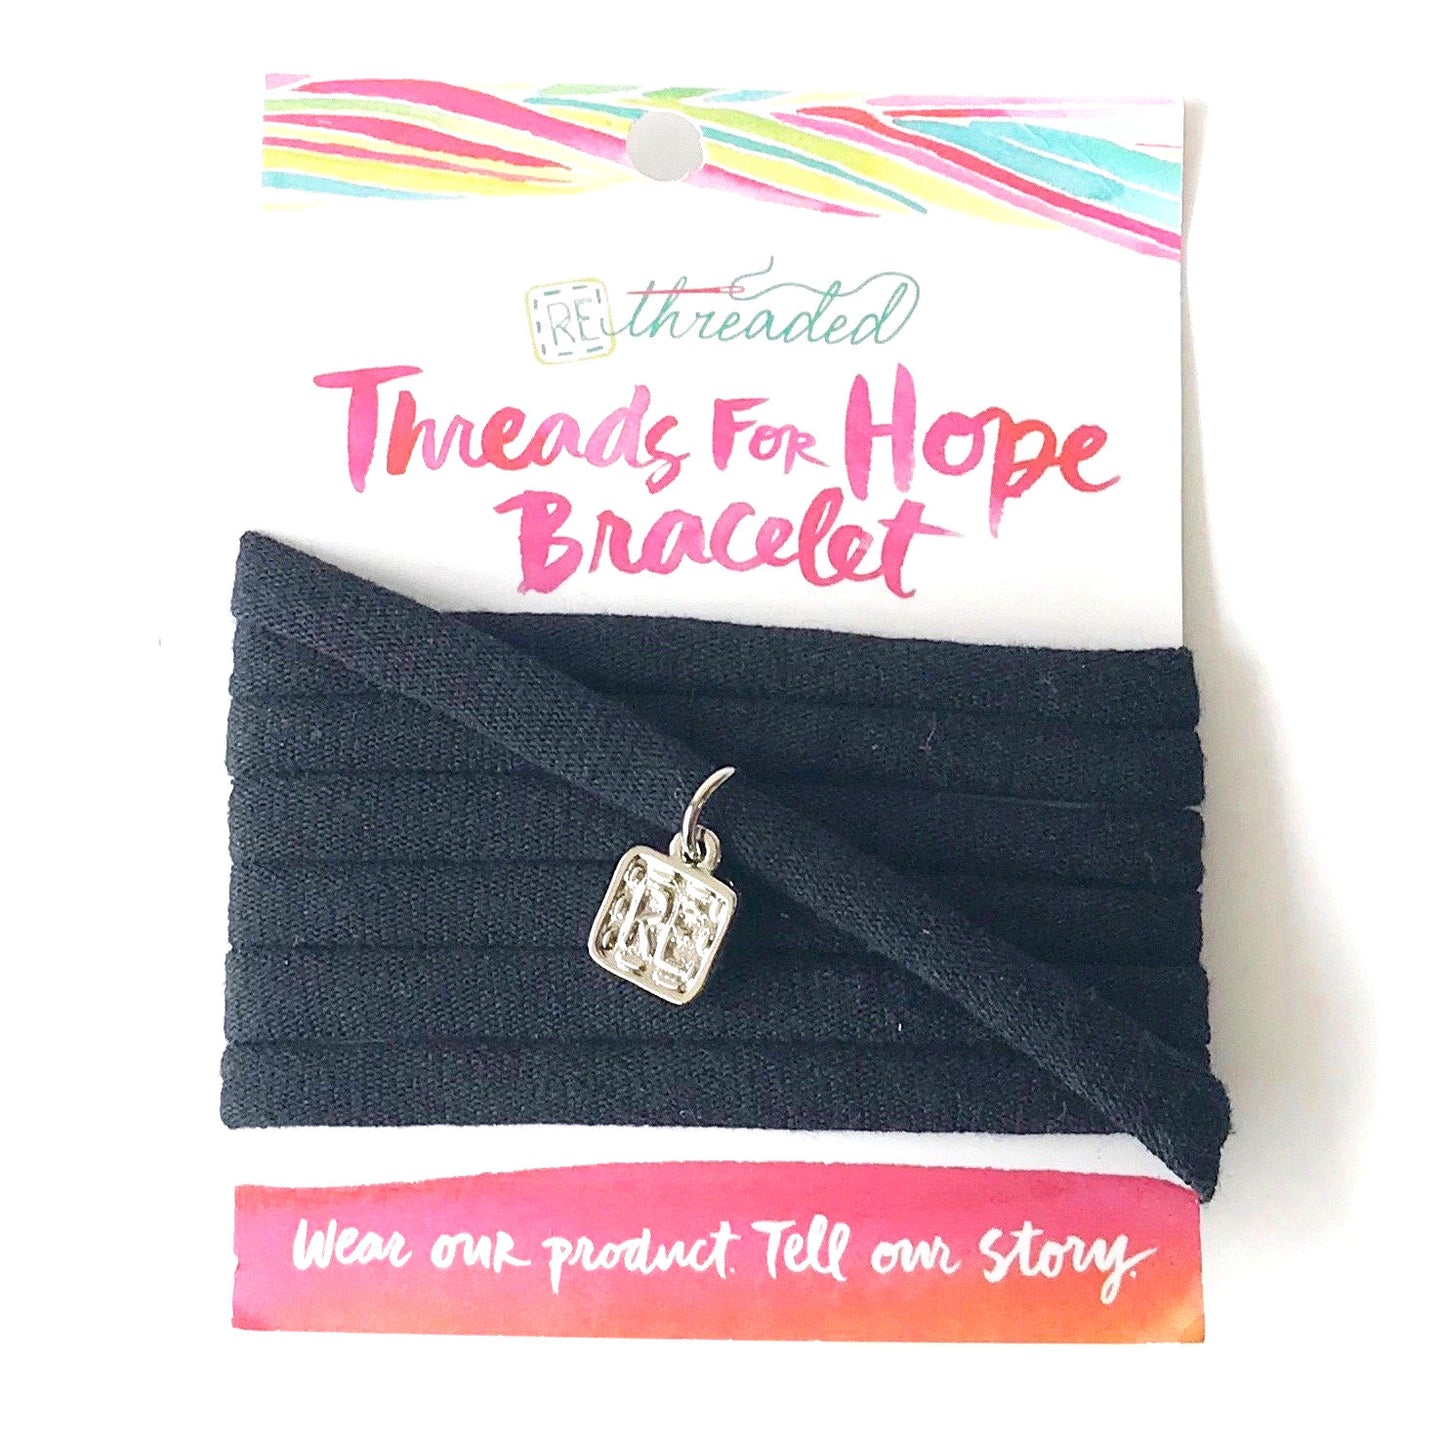 Threads For Hope Bracelet